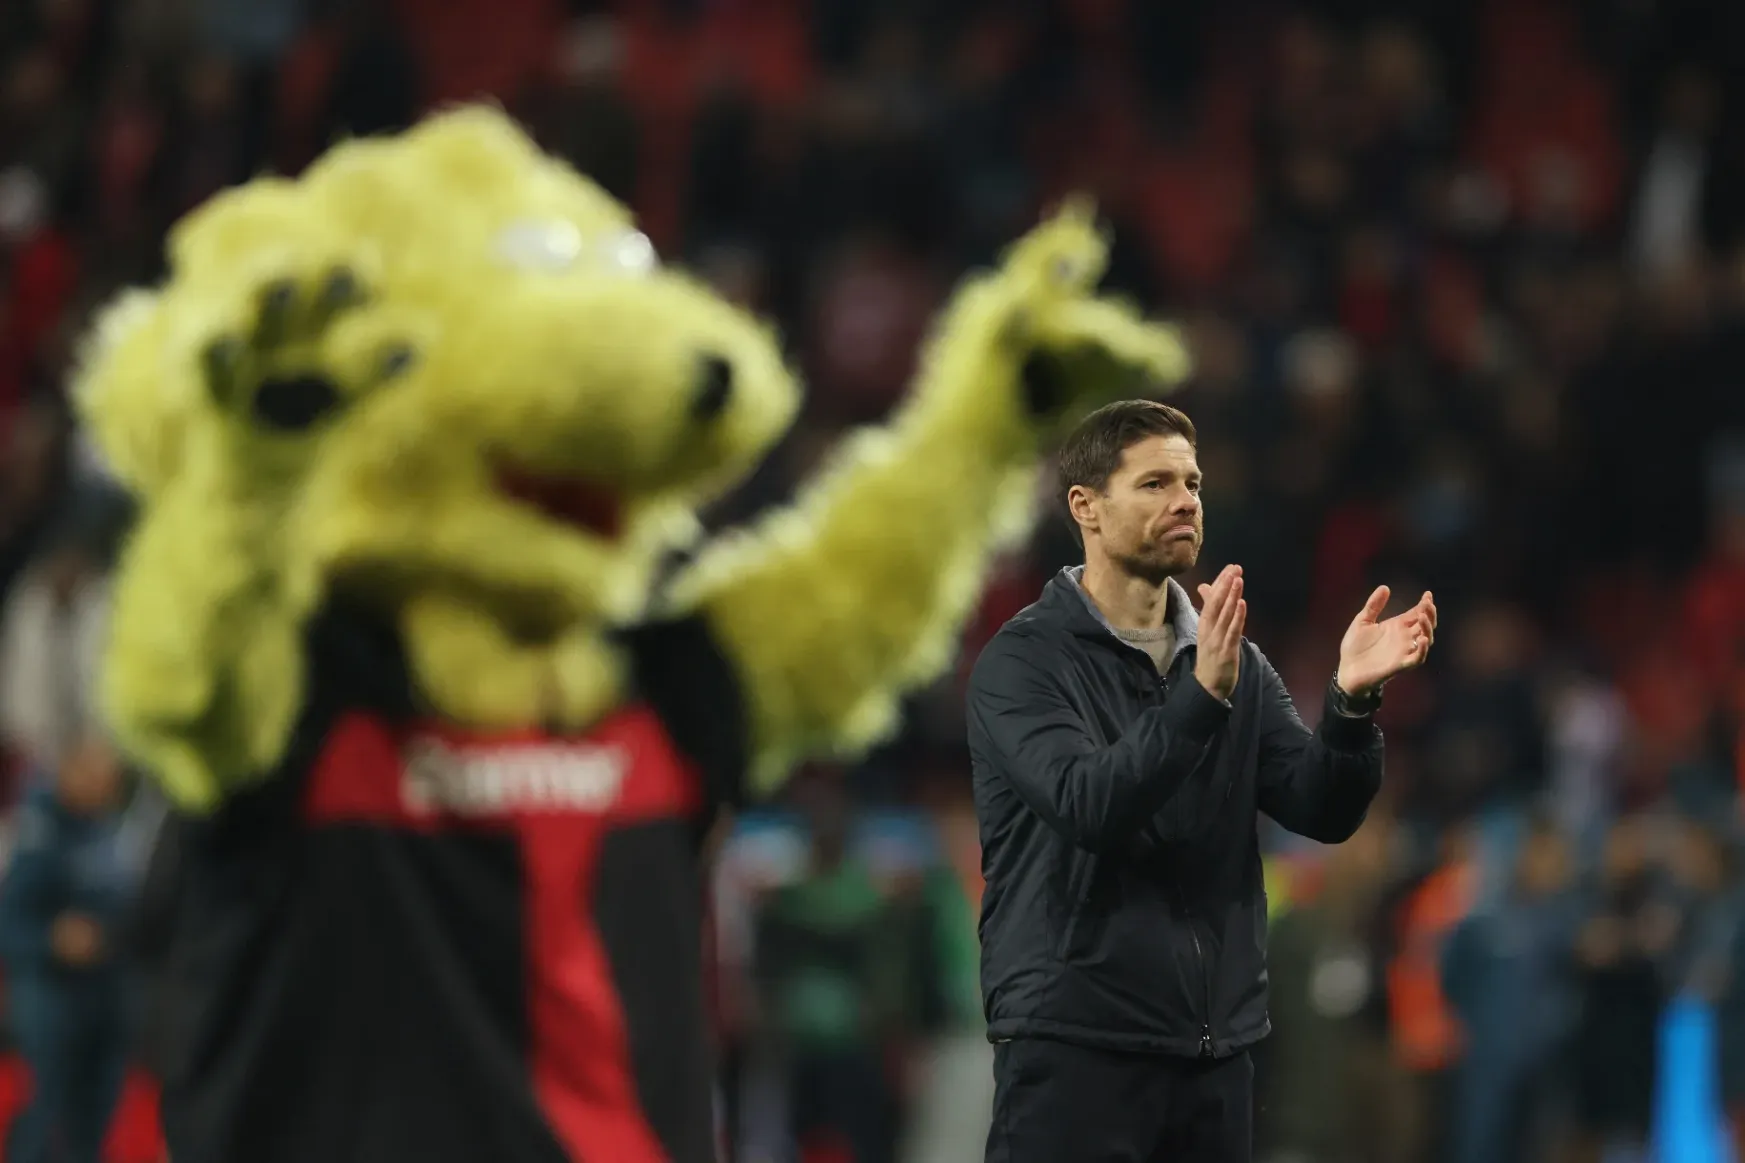 Kieső helyről az elitbe – őrült sebességgel igázza le a Bundesligát a Leverkusen